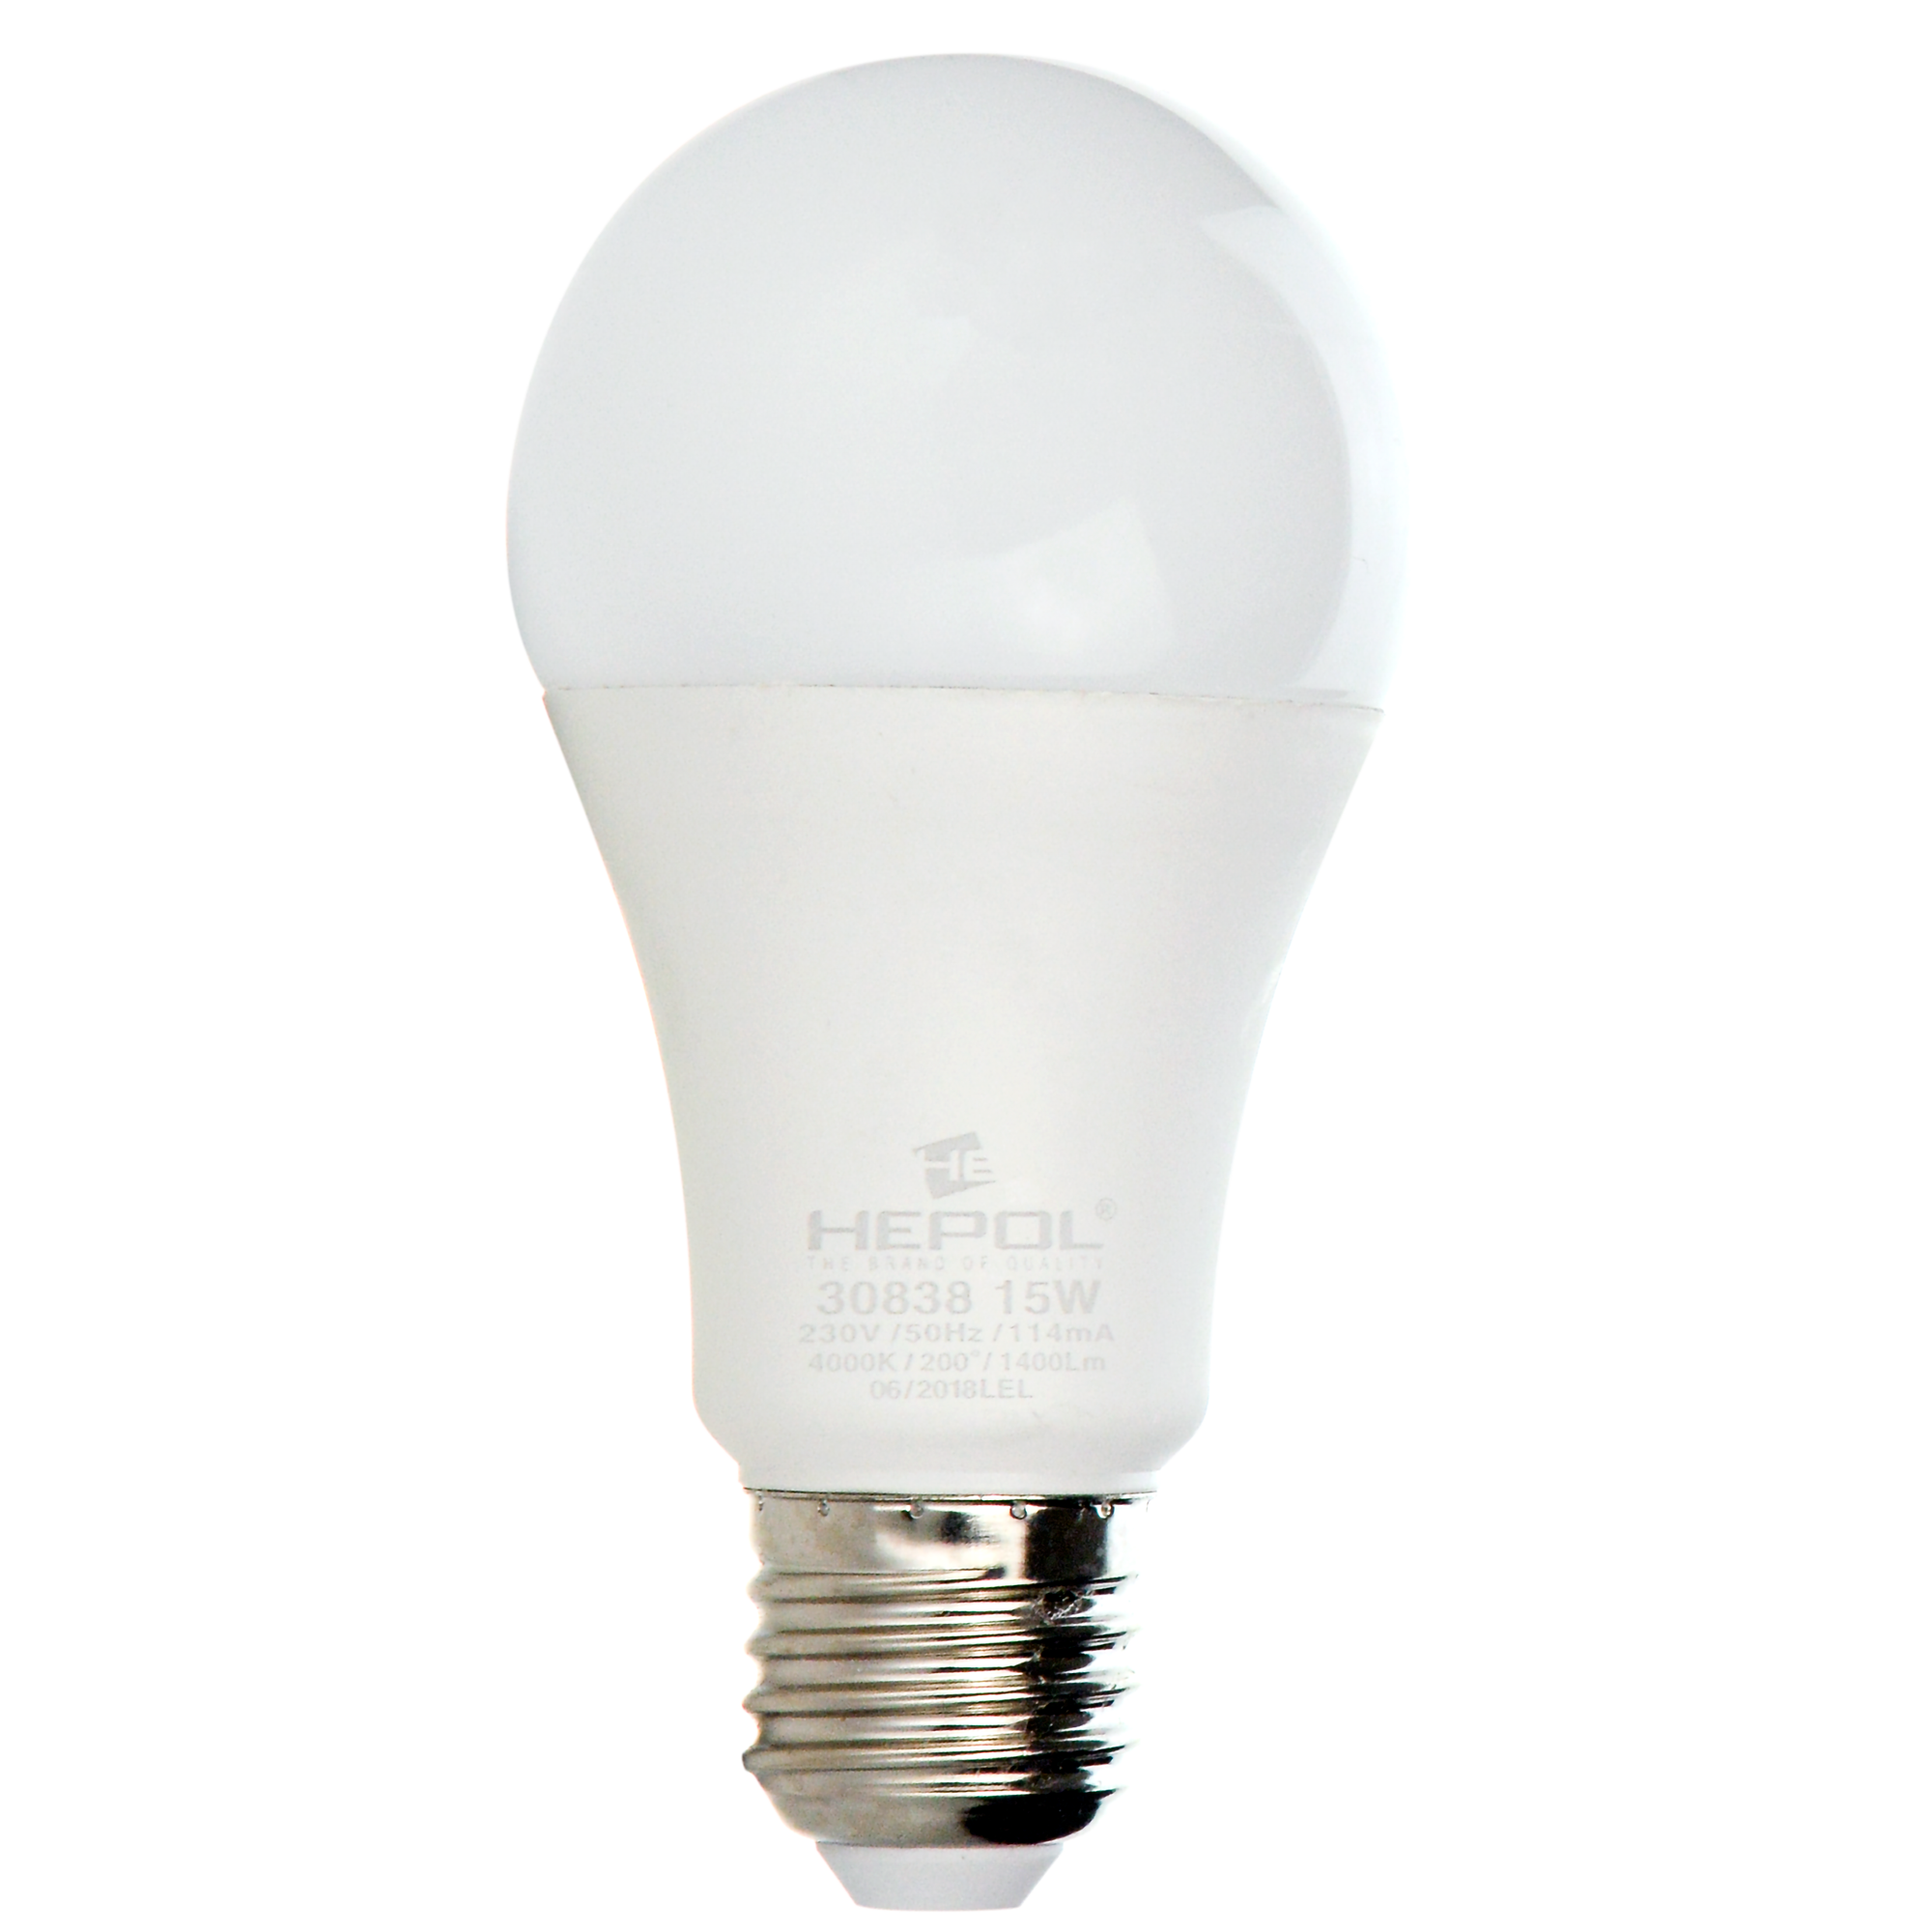 Bec LED Lohuis, forma A60, E27, 15W, lumina neutrala